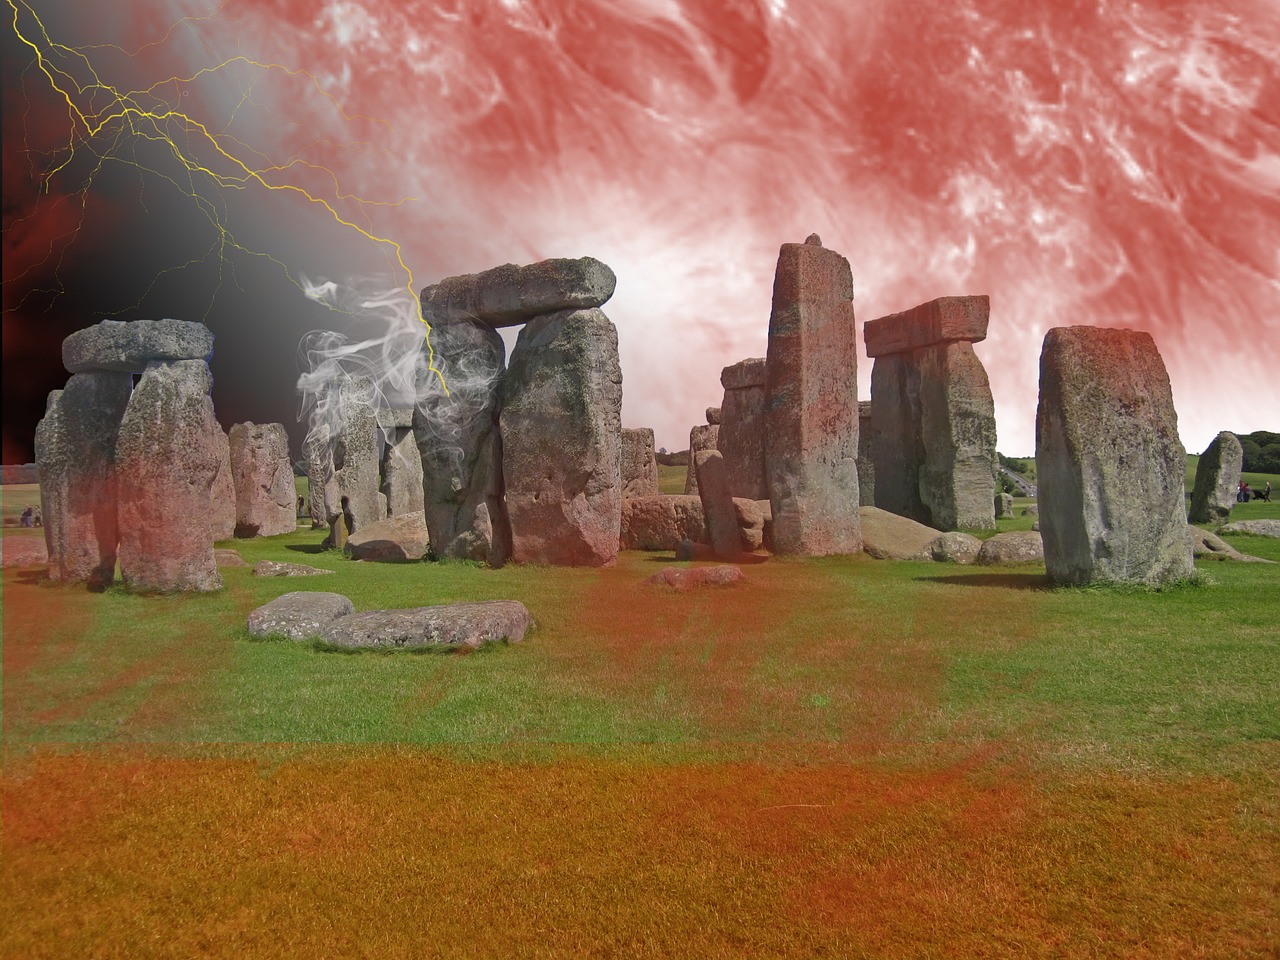 holiday stonehenge england free photo